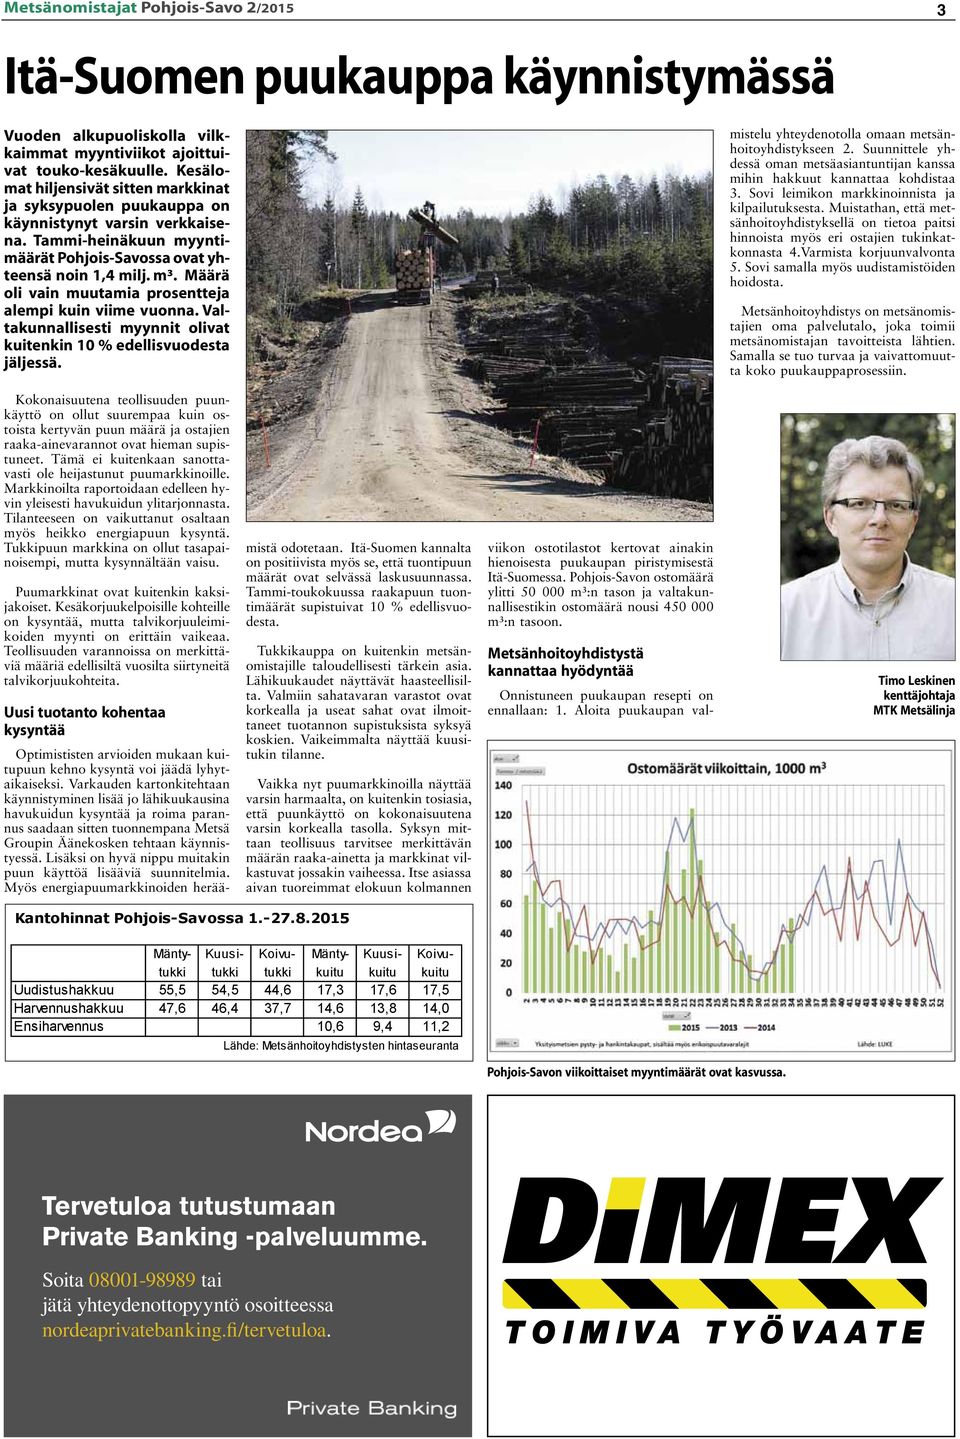 Tammi-heinäkuun myyntimäärät Pohjois-Savossa ovat yhteensä noin 1,4 milj. m³. Määrä oli vain muutamia prosentteja alempi kuin viime vuonna.